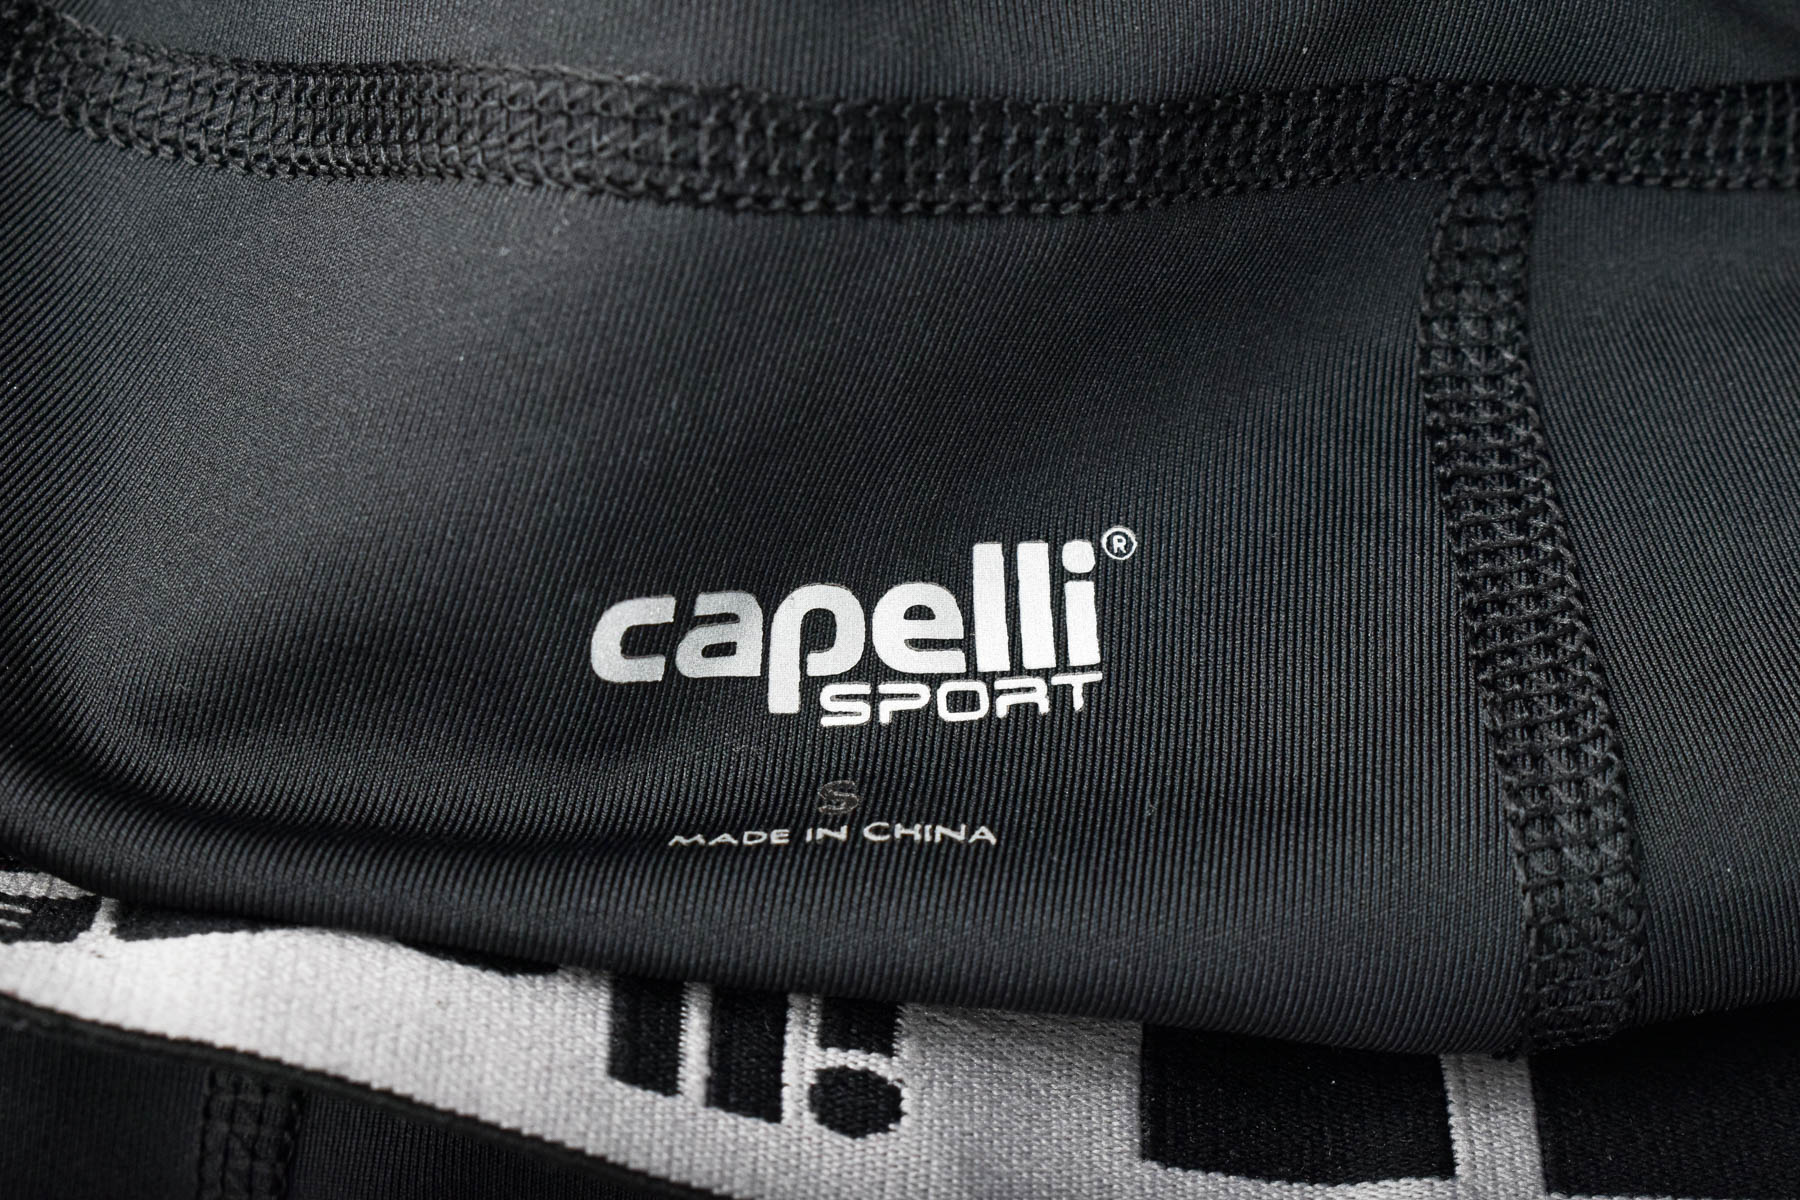 Trening pentru damă - Capelli sport - 2